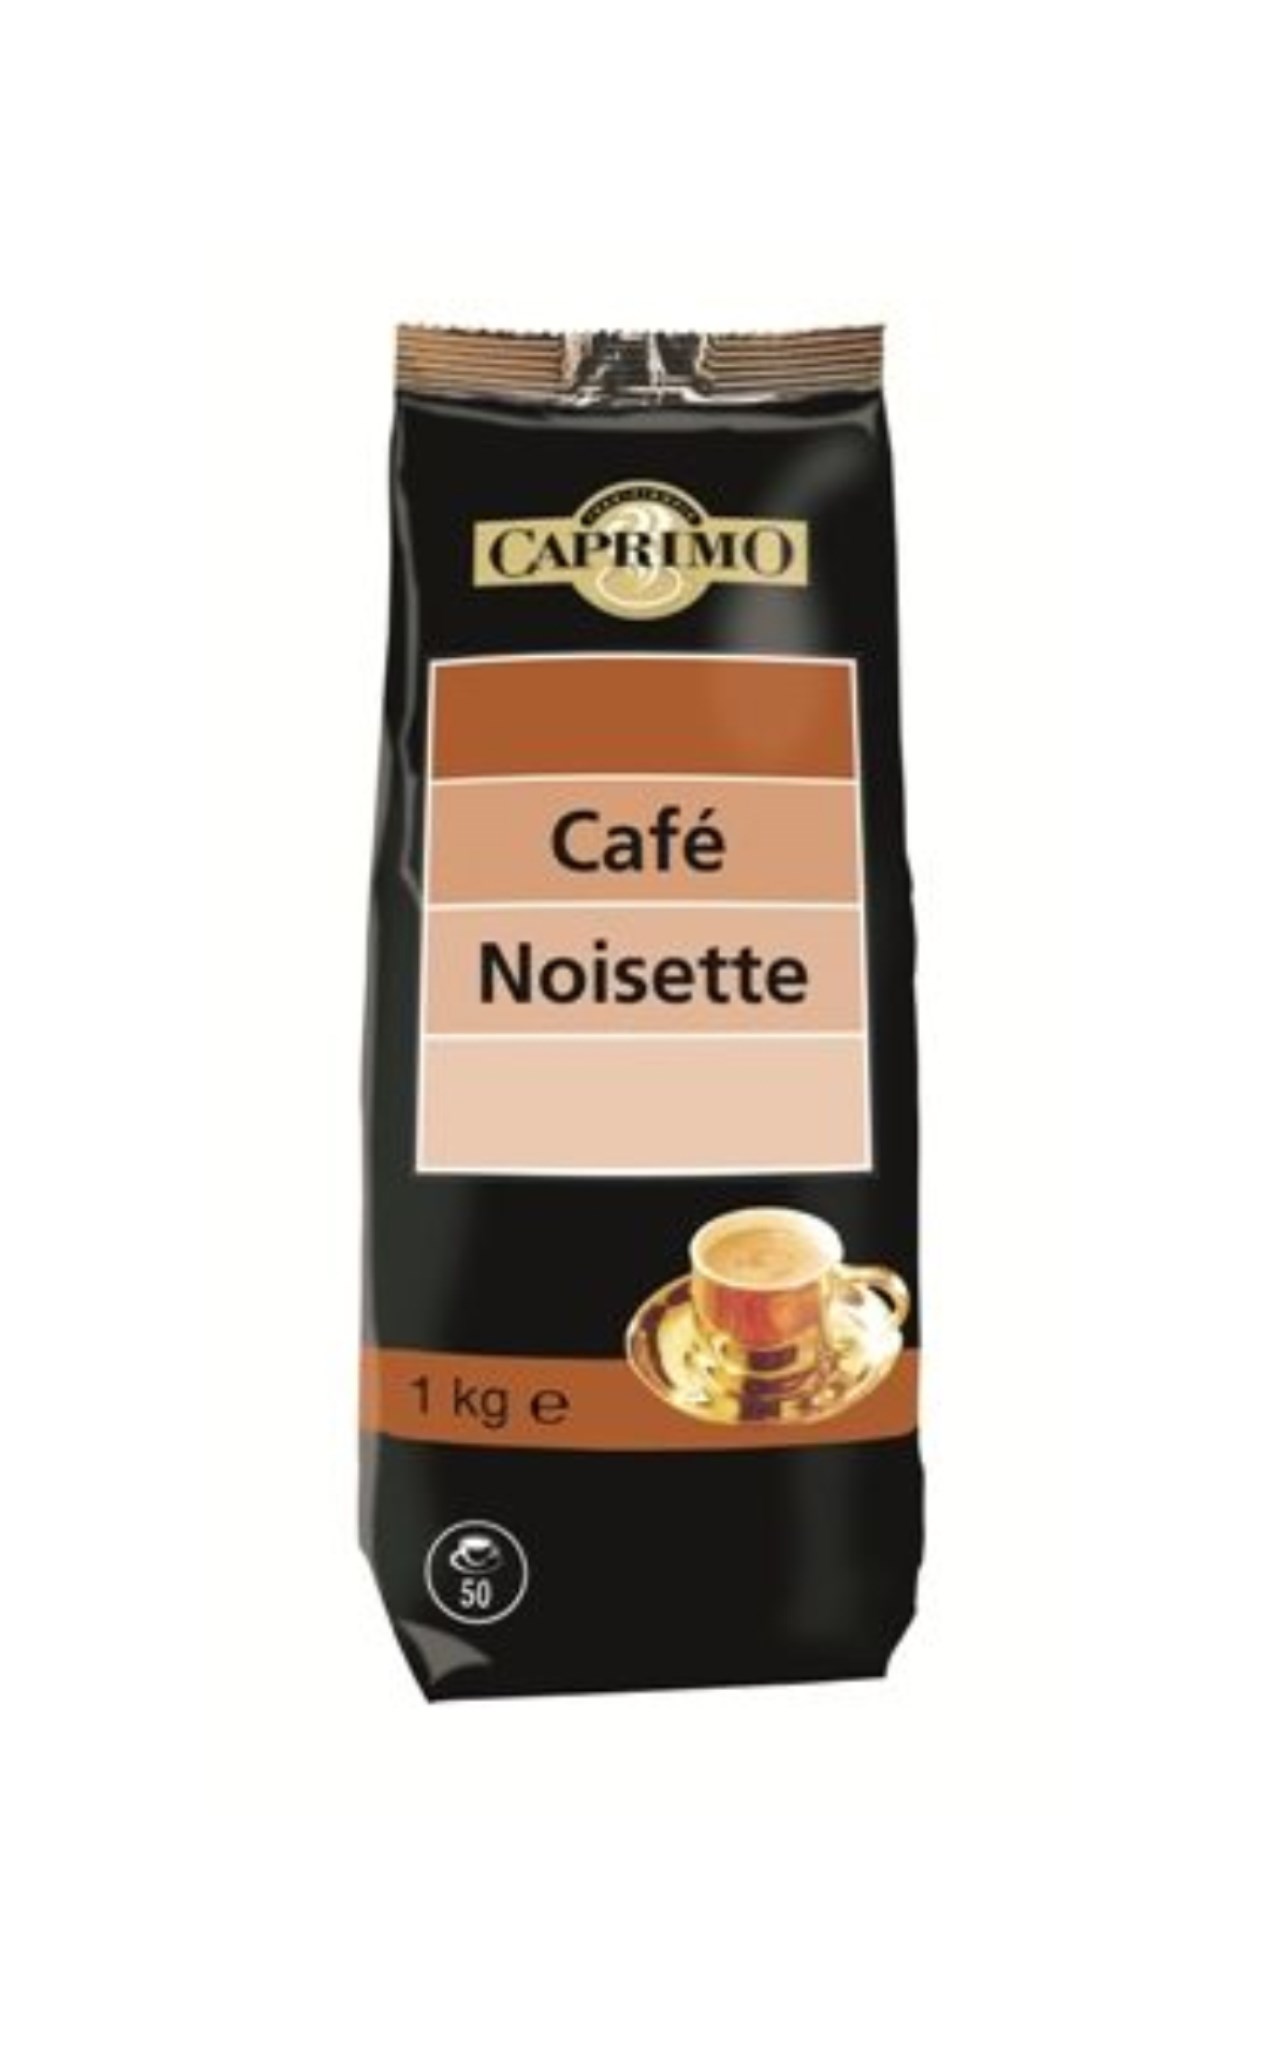 CAPRIMO Café noisette 1kg  café lyophilisé aromatisé en ligne